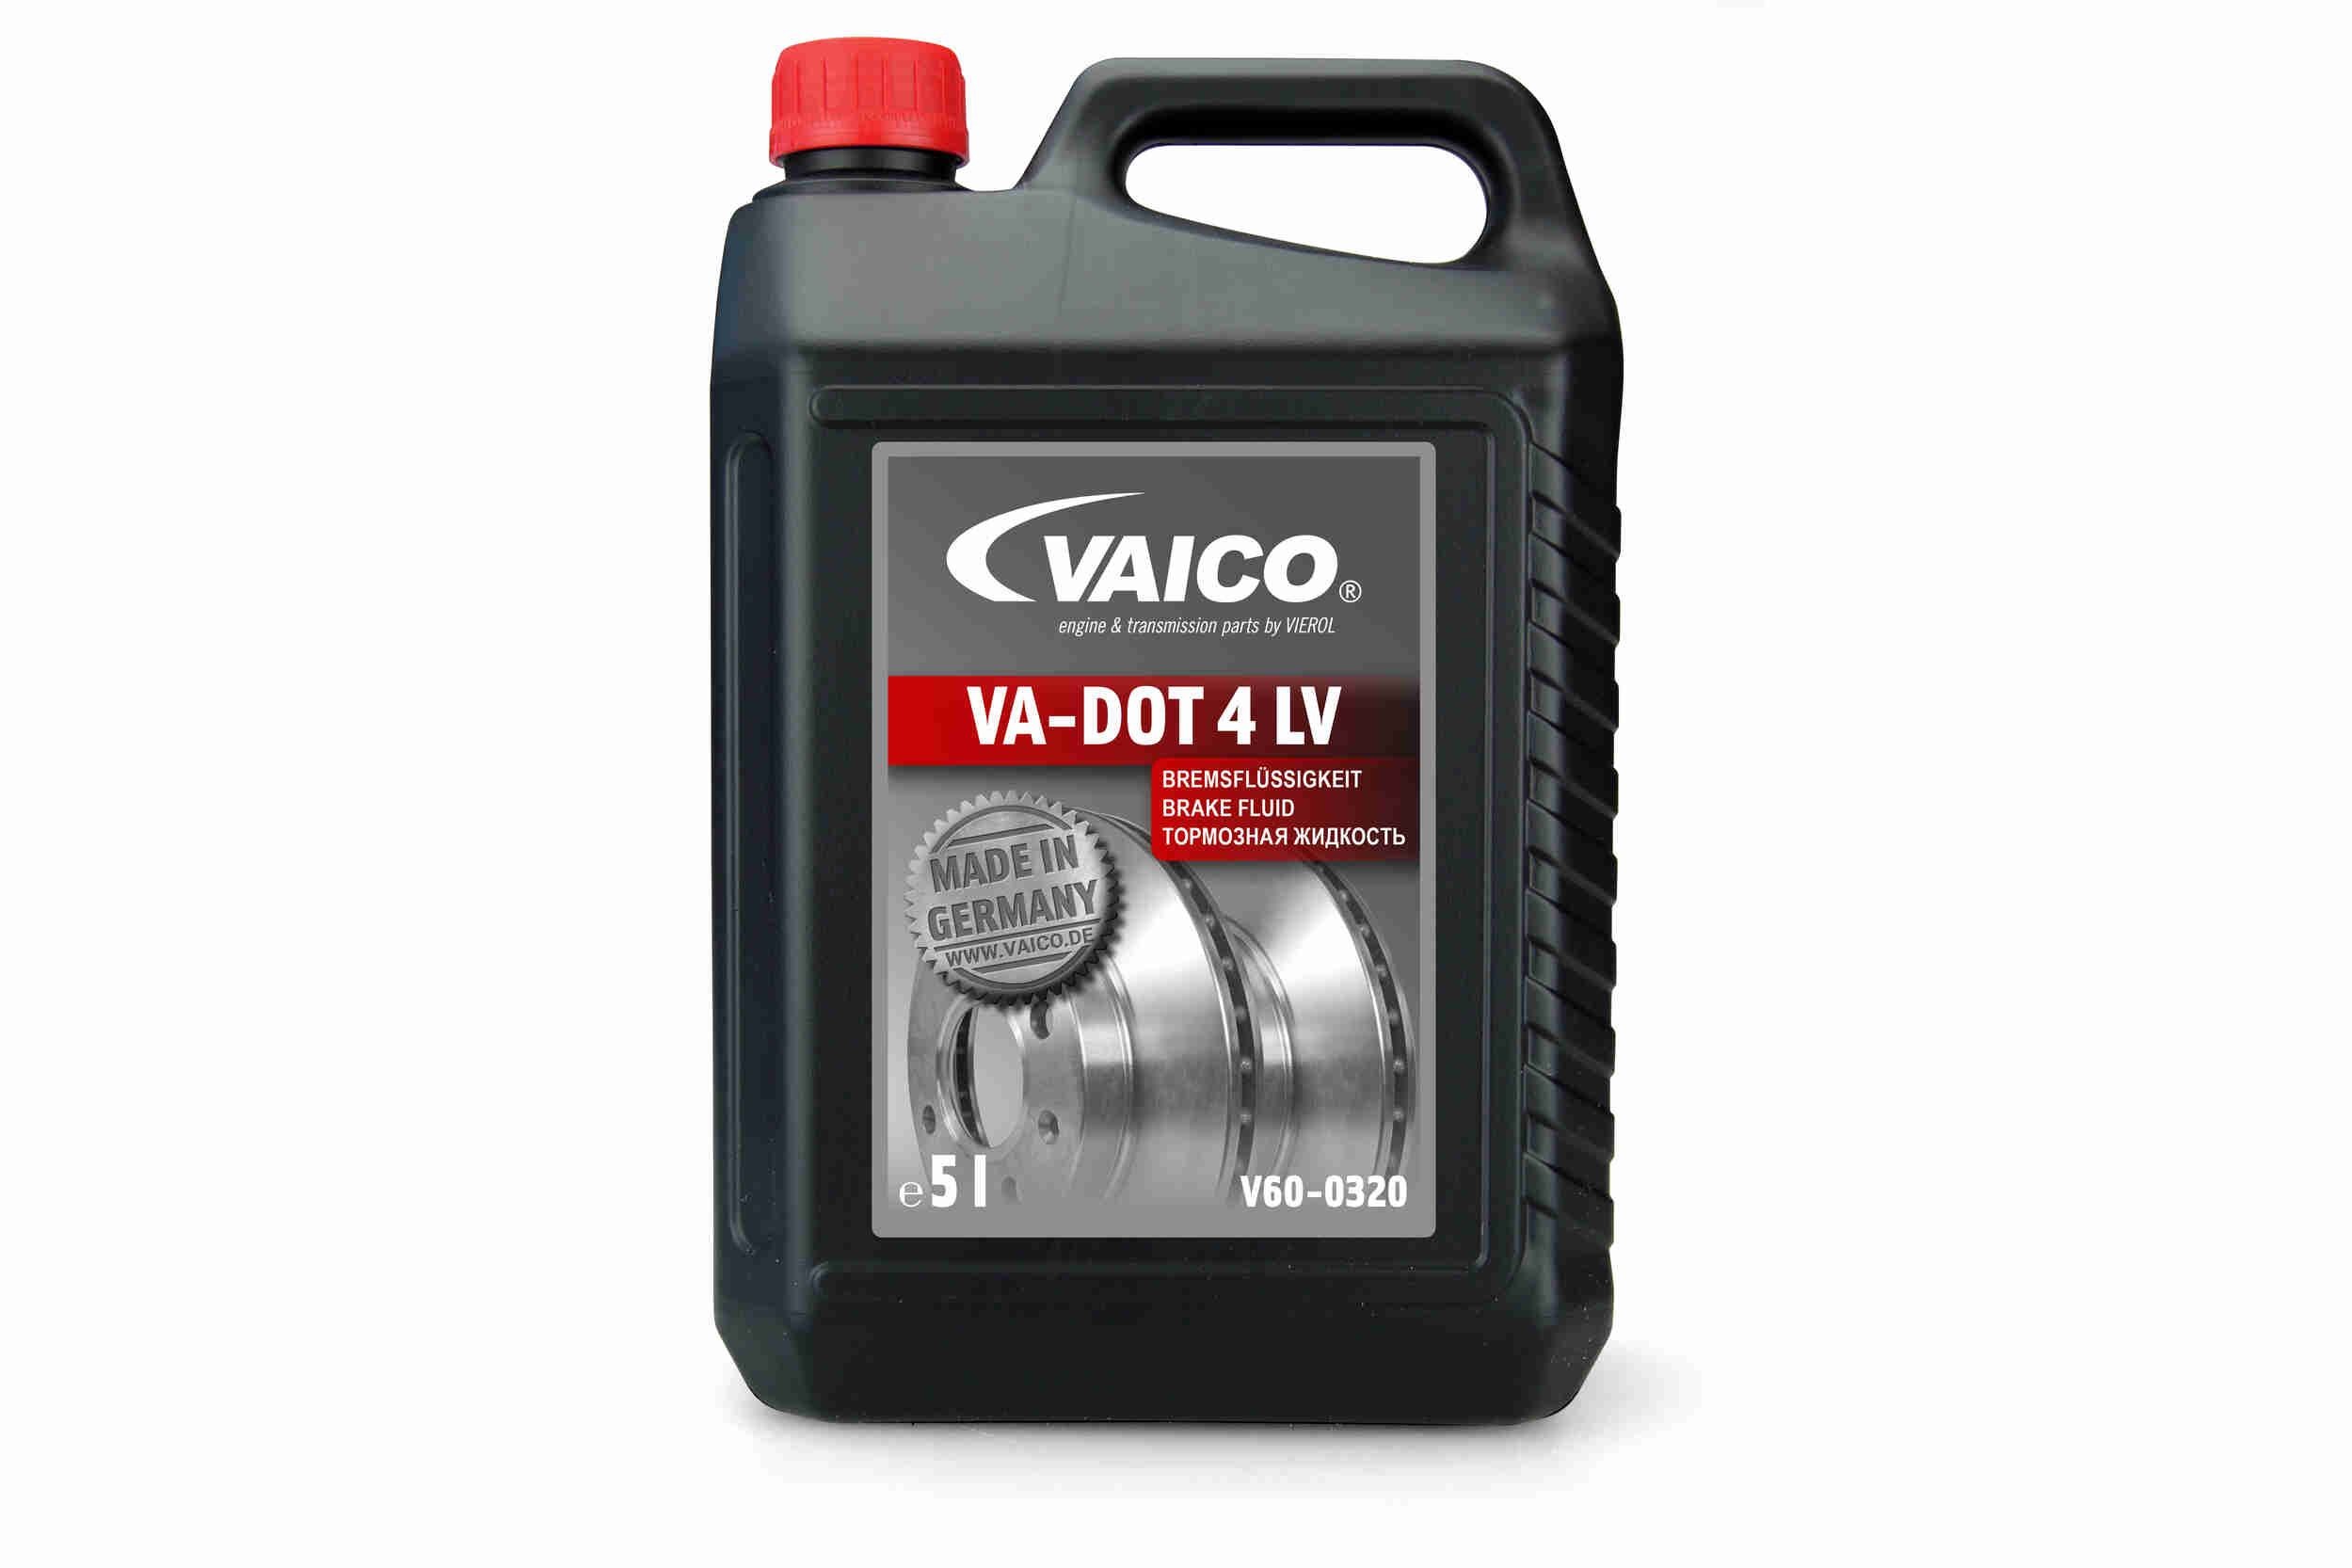 Original V60-0320 VAICO Brake fluid experience and price